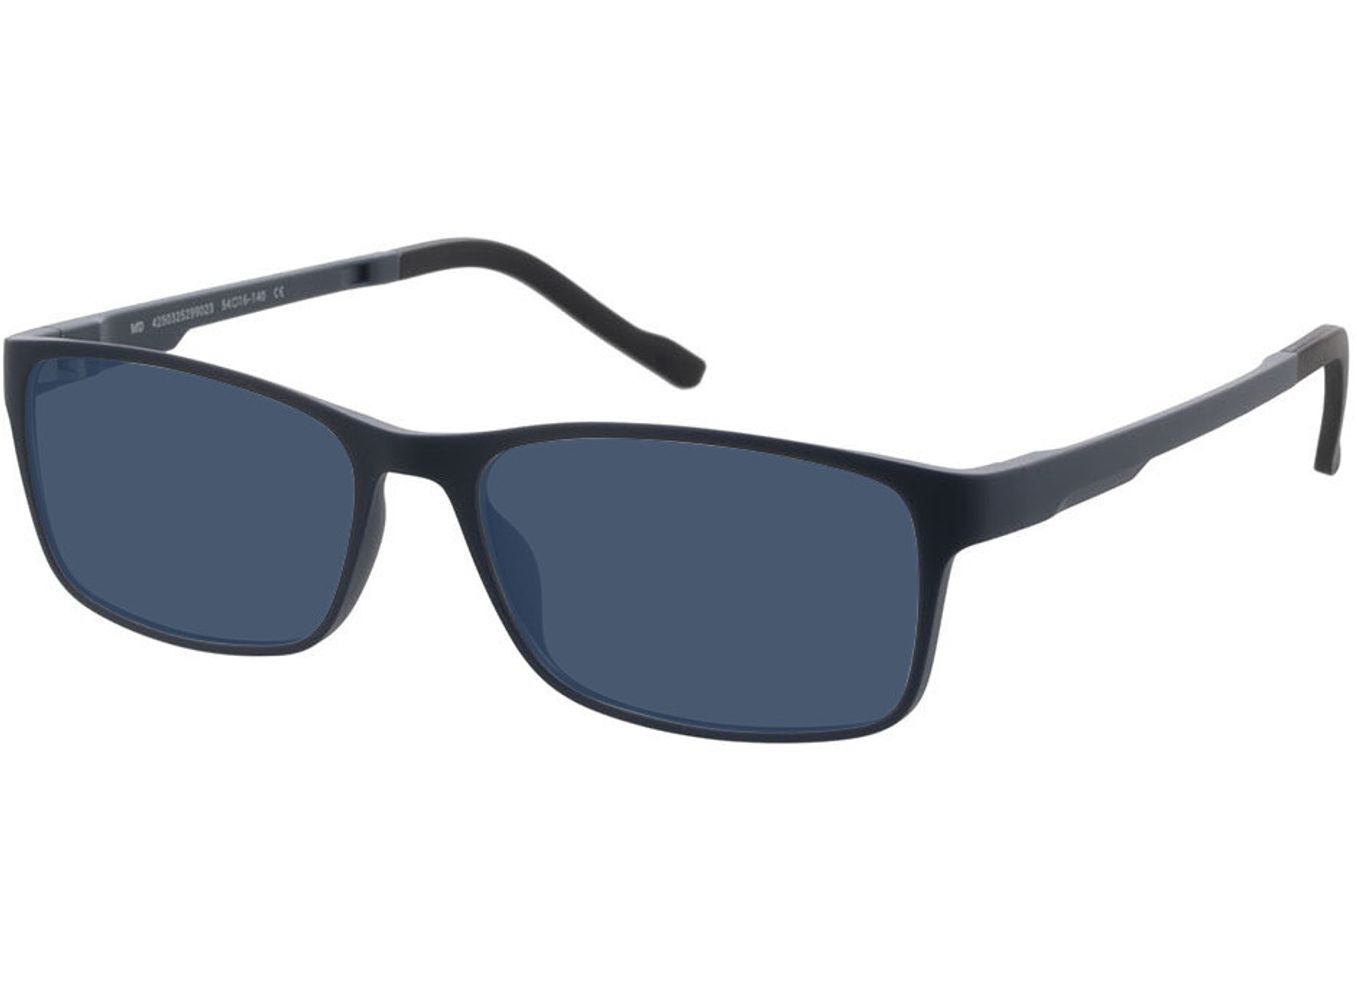 Köln - blau Sonnenbrille ohne Sehstärke, Vollrand, Rechteckig von Brille24 Collection